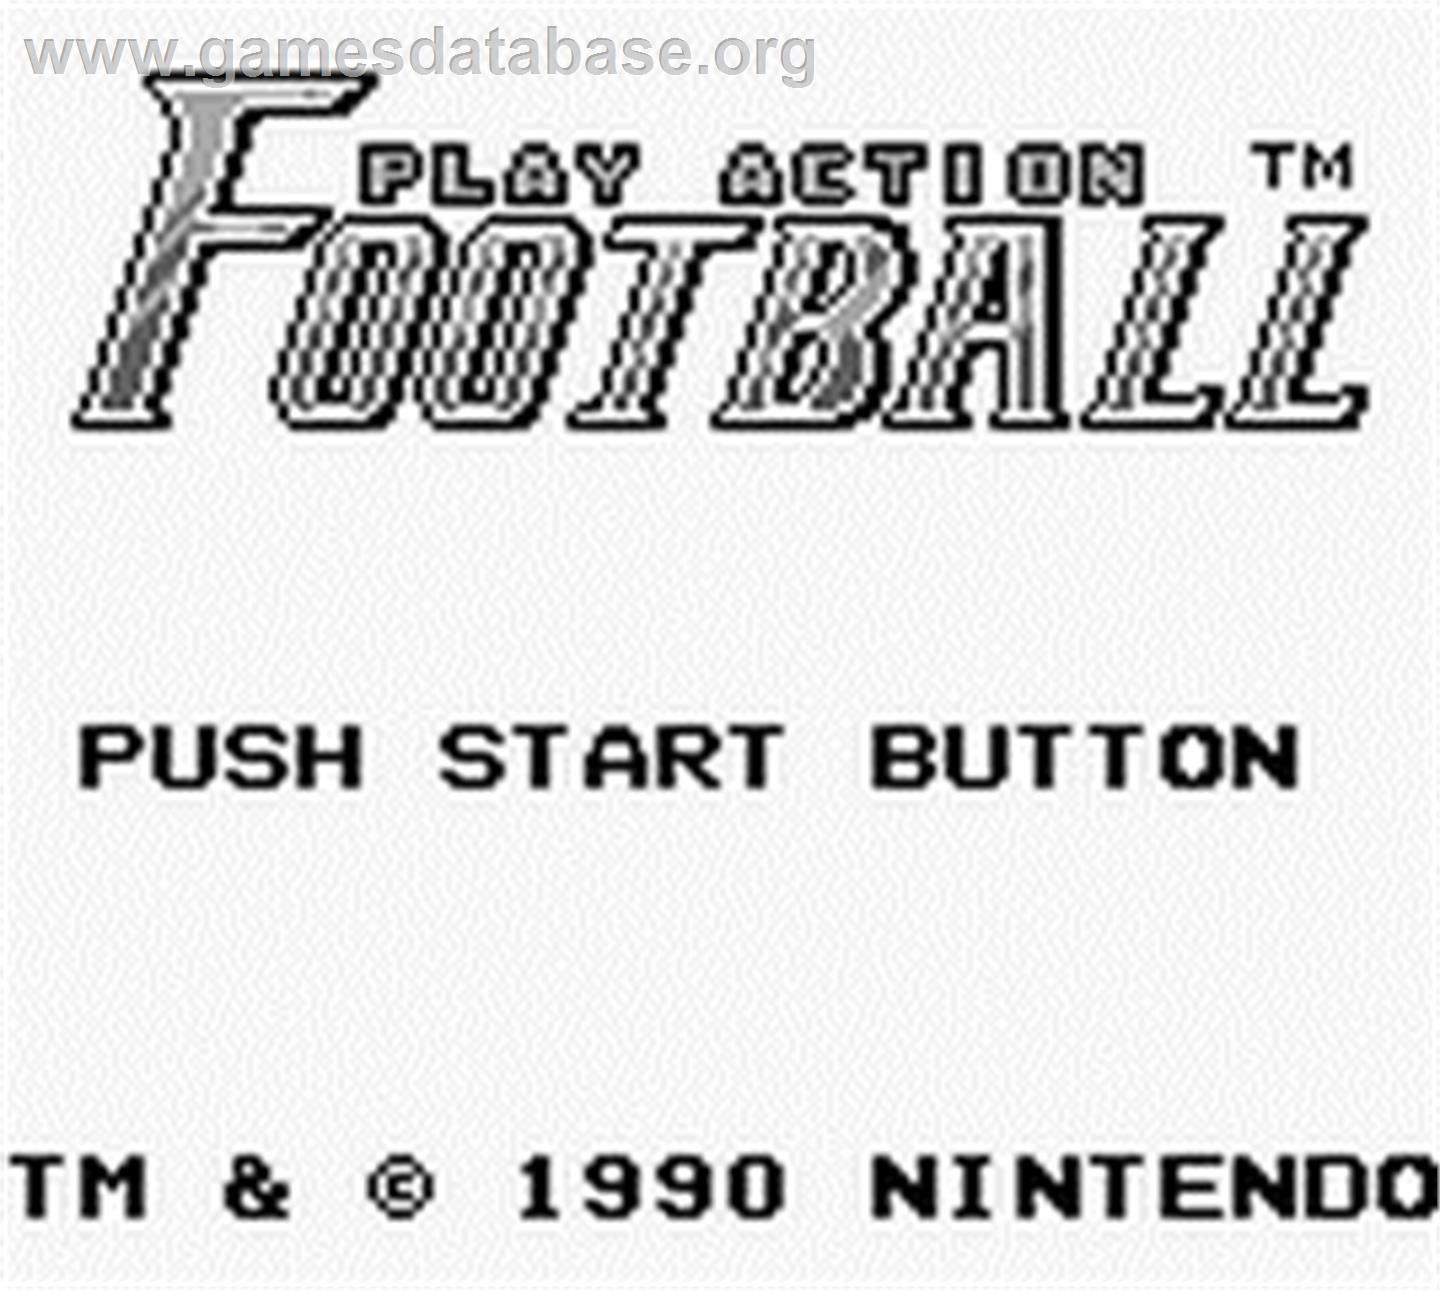 Play Action Football - Nintendo Game Boy - Artwork - Title Screen